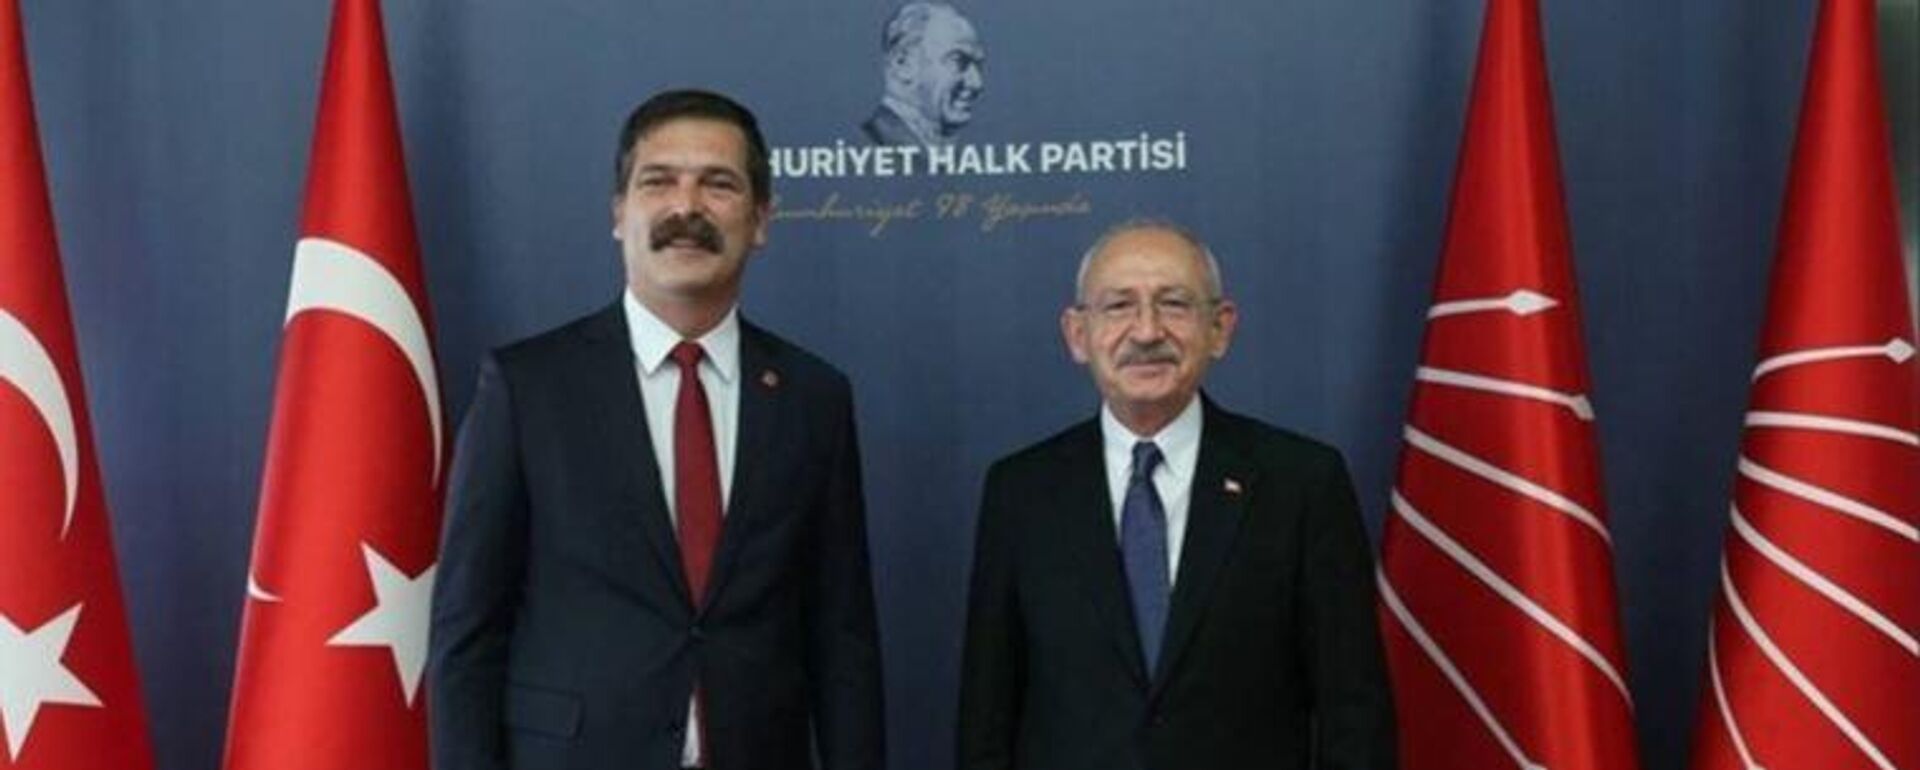 CHP lideri Kılıçdaroğu, TİP Genel Başkanı Erkan Baş'ı kabul etti - Sputnik Türkiye, 1920, 17.11.2021